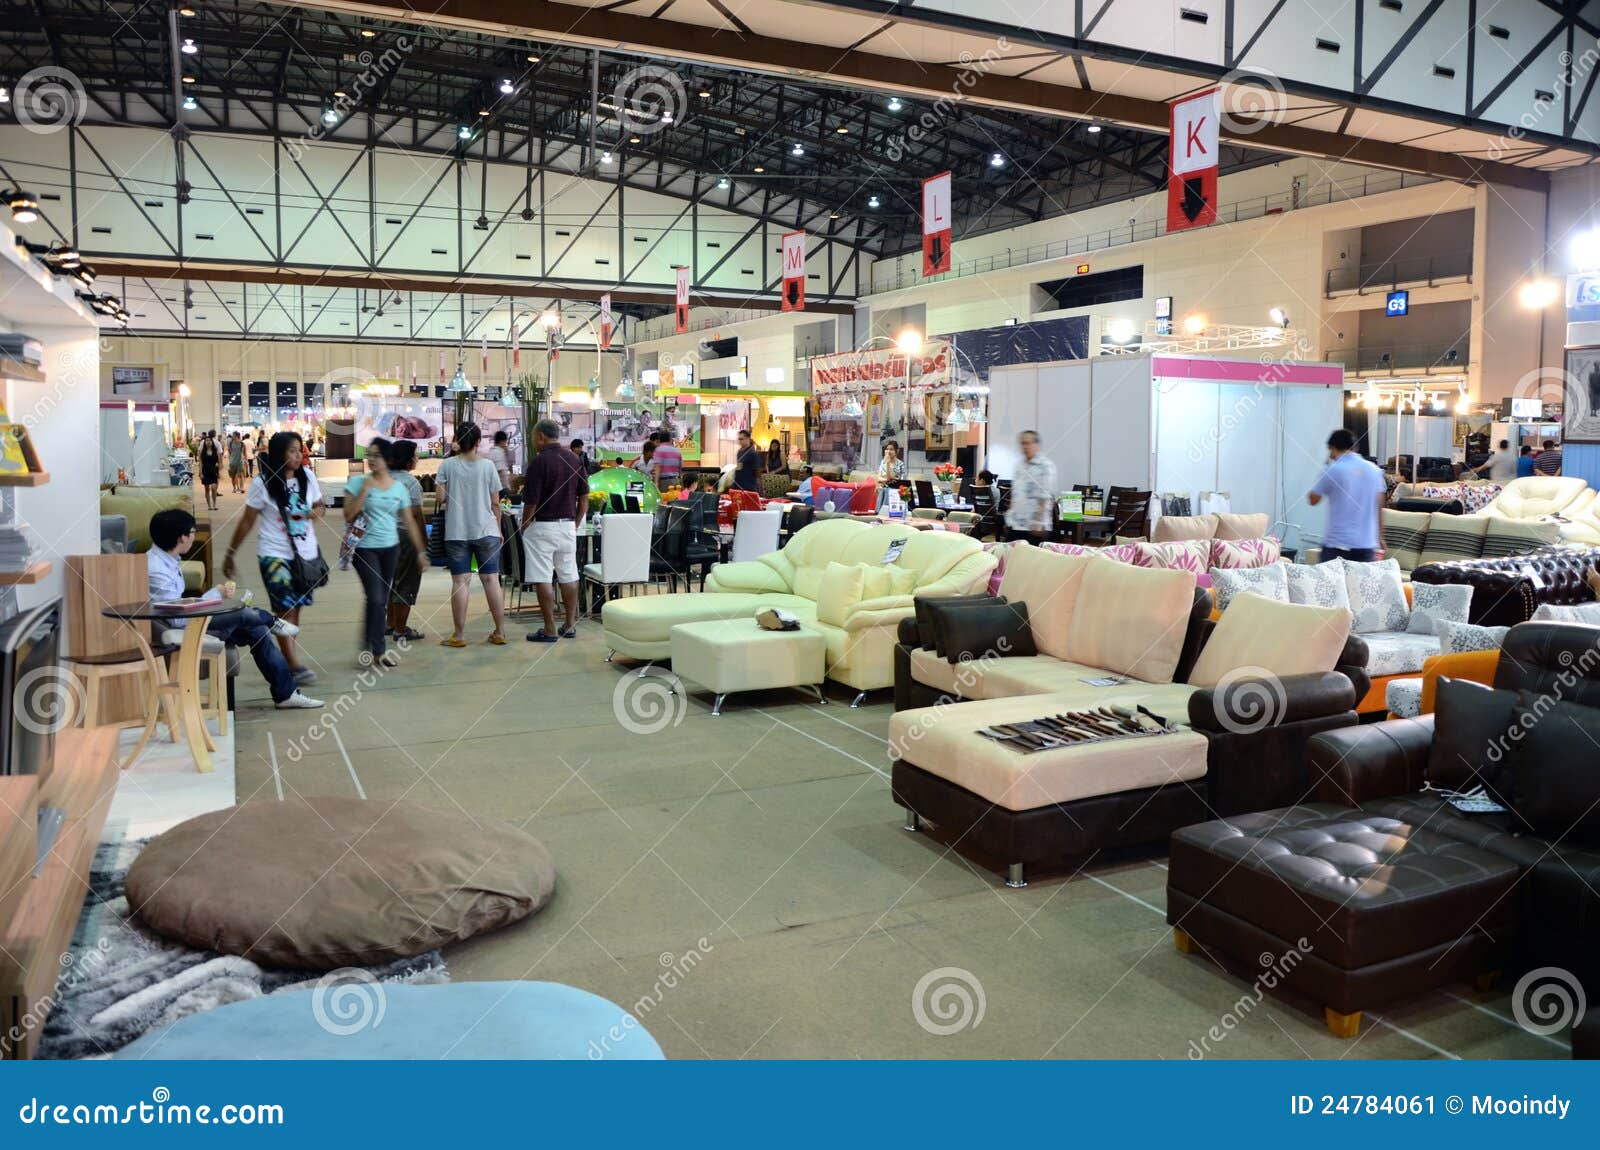 Thailand Furniture Fair Editorial Photo Image Of Fair 24784061